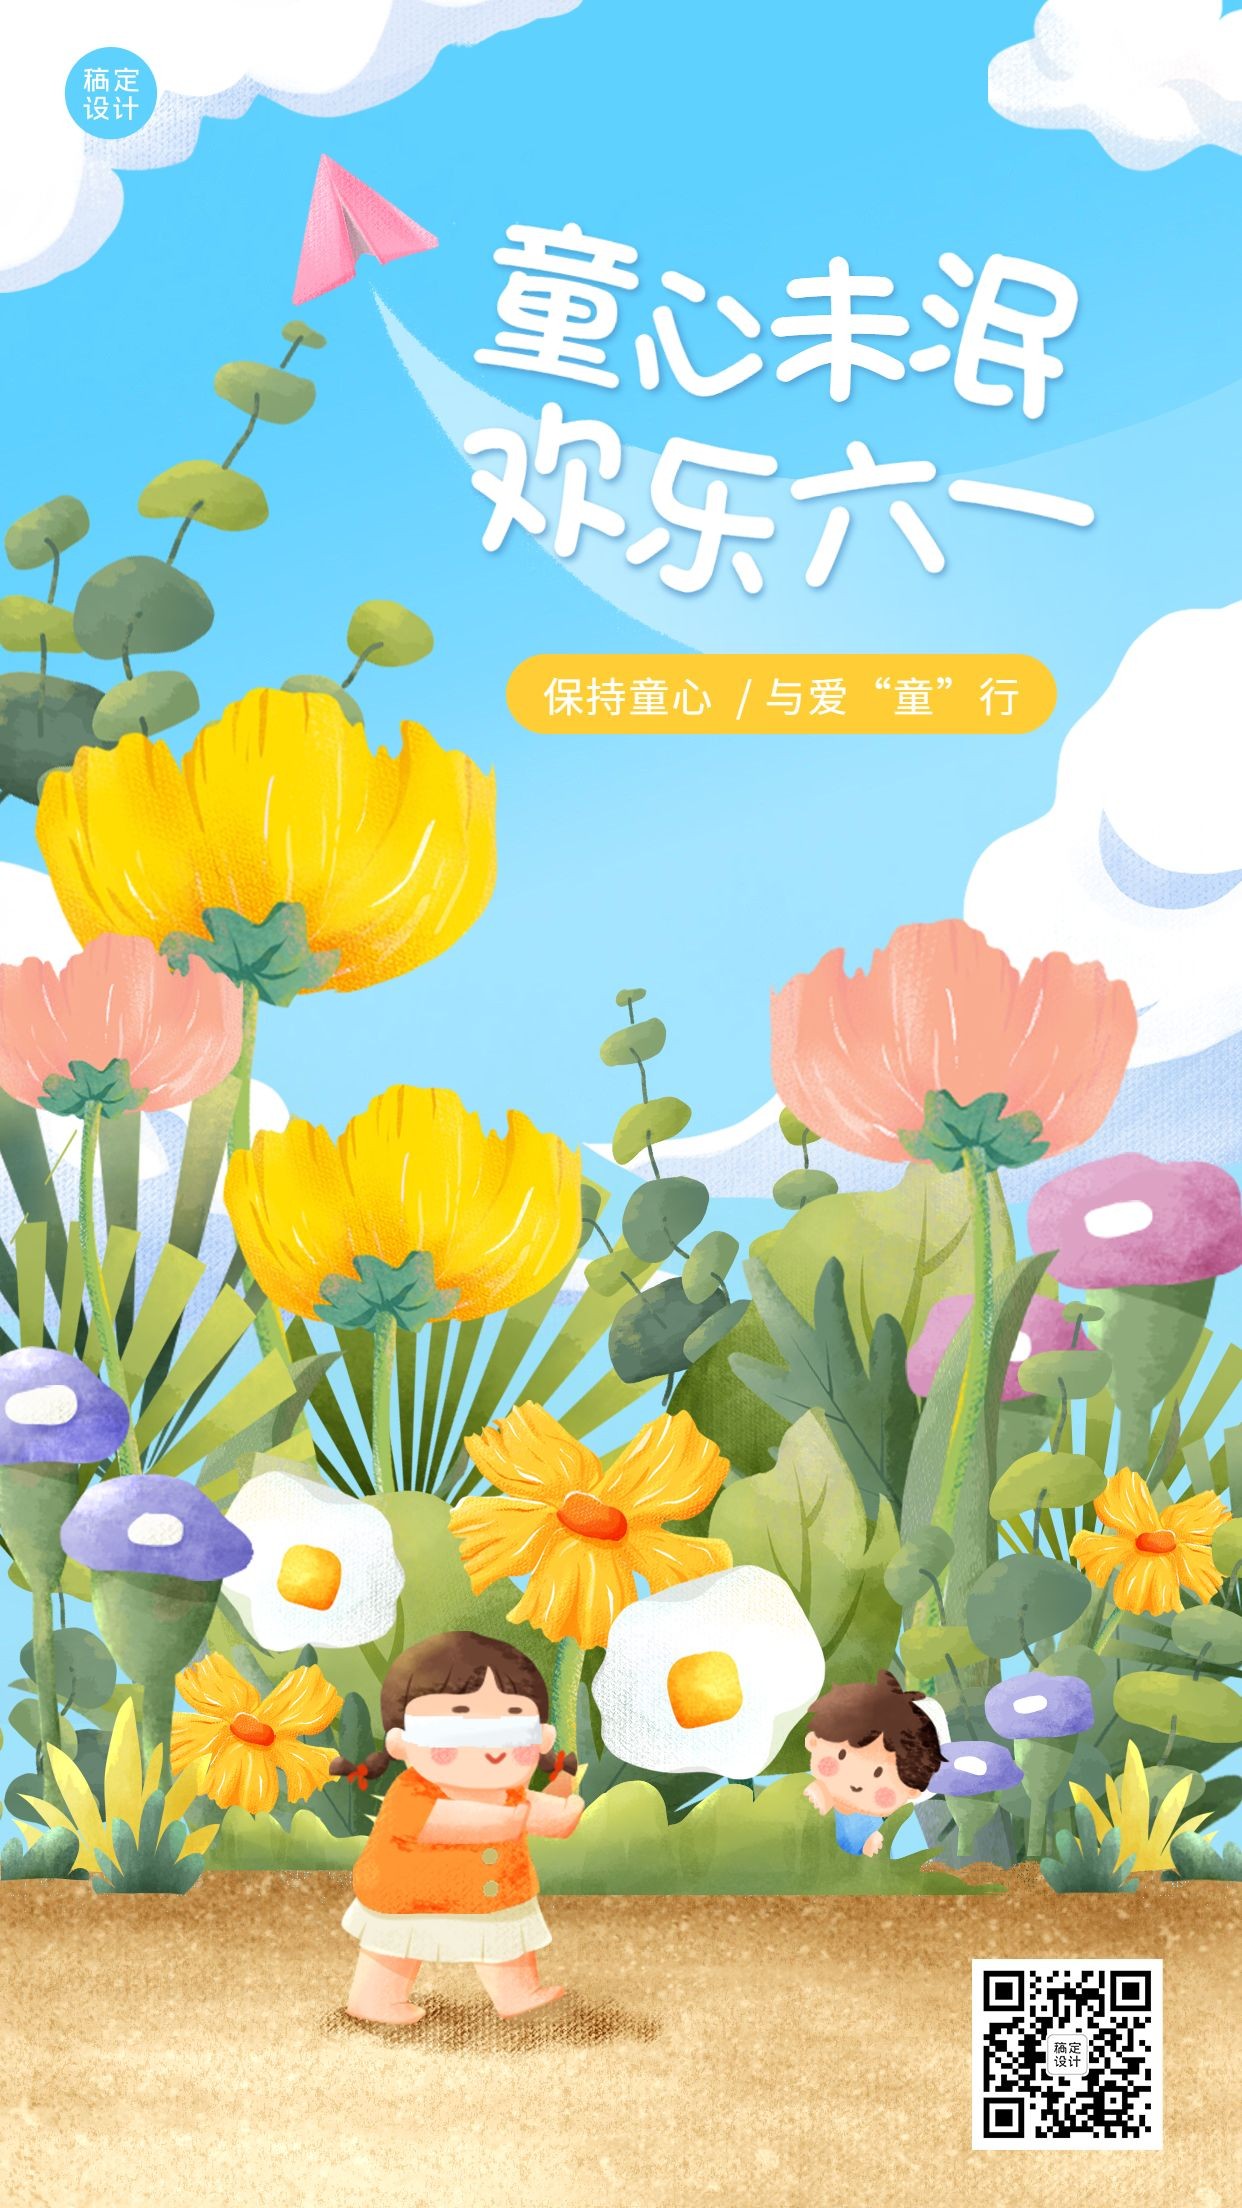 儿童节节日祝福插画手机海报预览效果